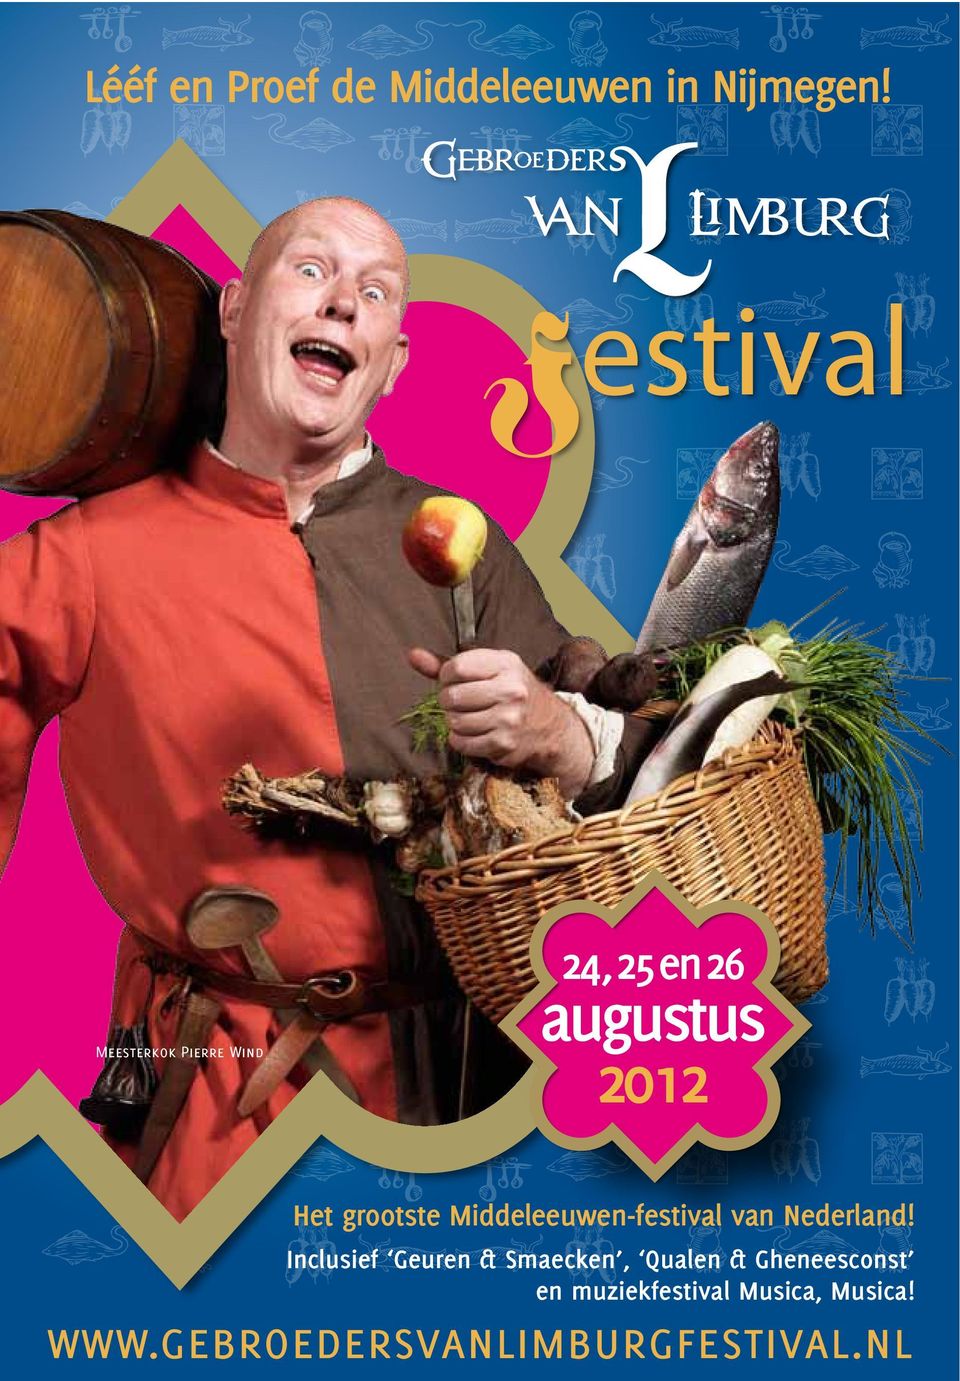 grootste Middeleeuwen-festival van Nederland!